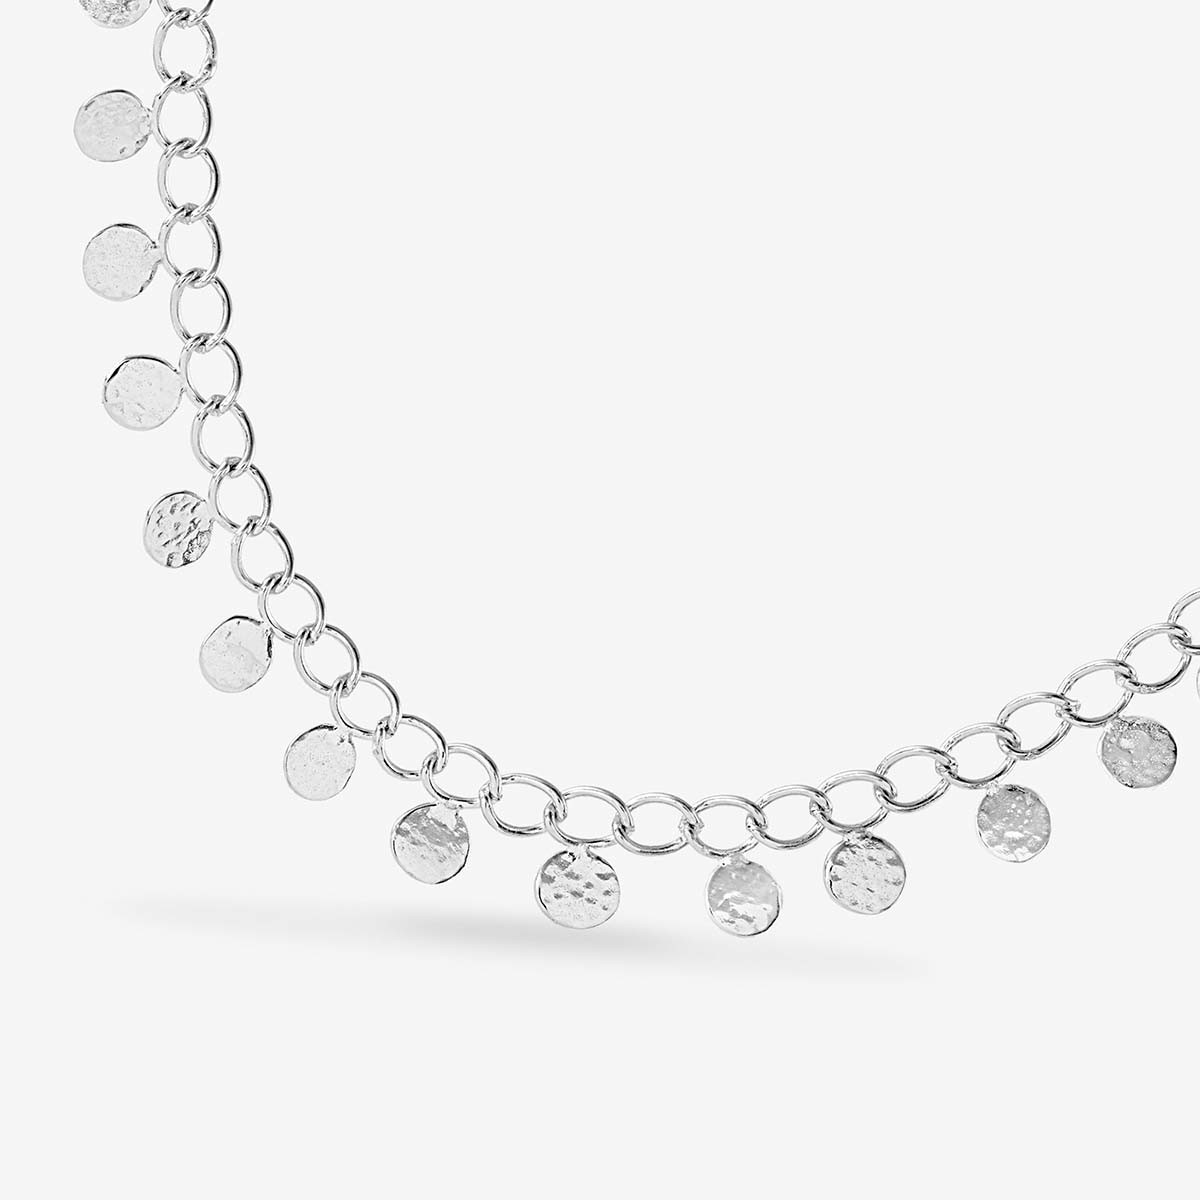 Coin necklace - Halsketten - Silber